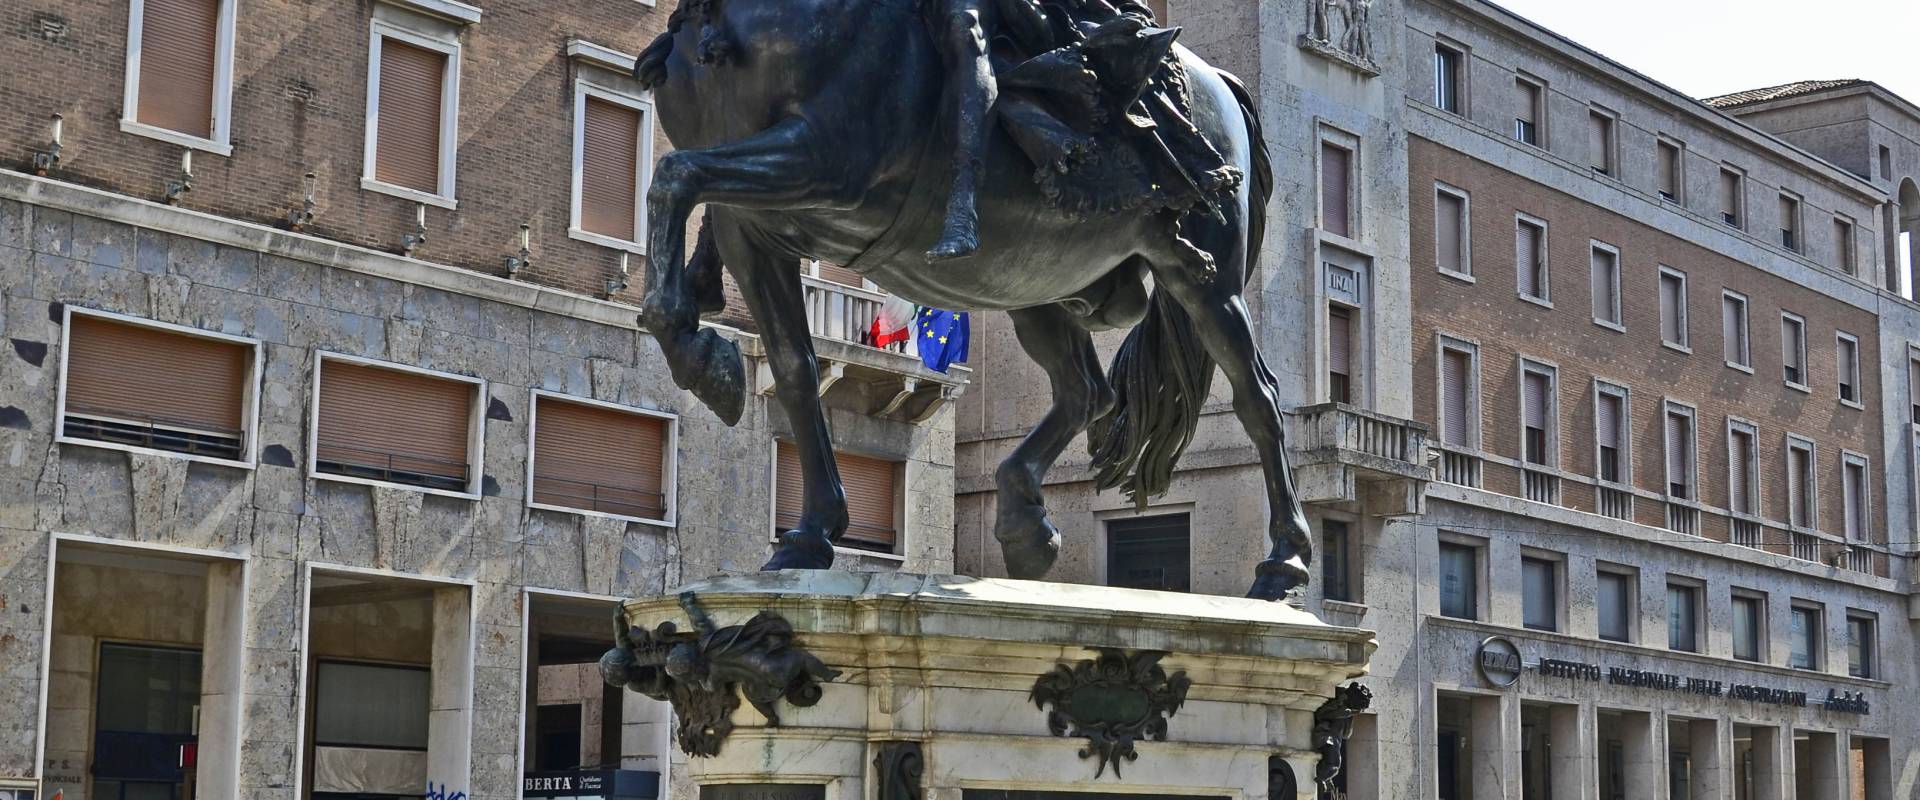 Statua equestre Farnesiana 1 foto di Pierangelo66